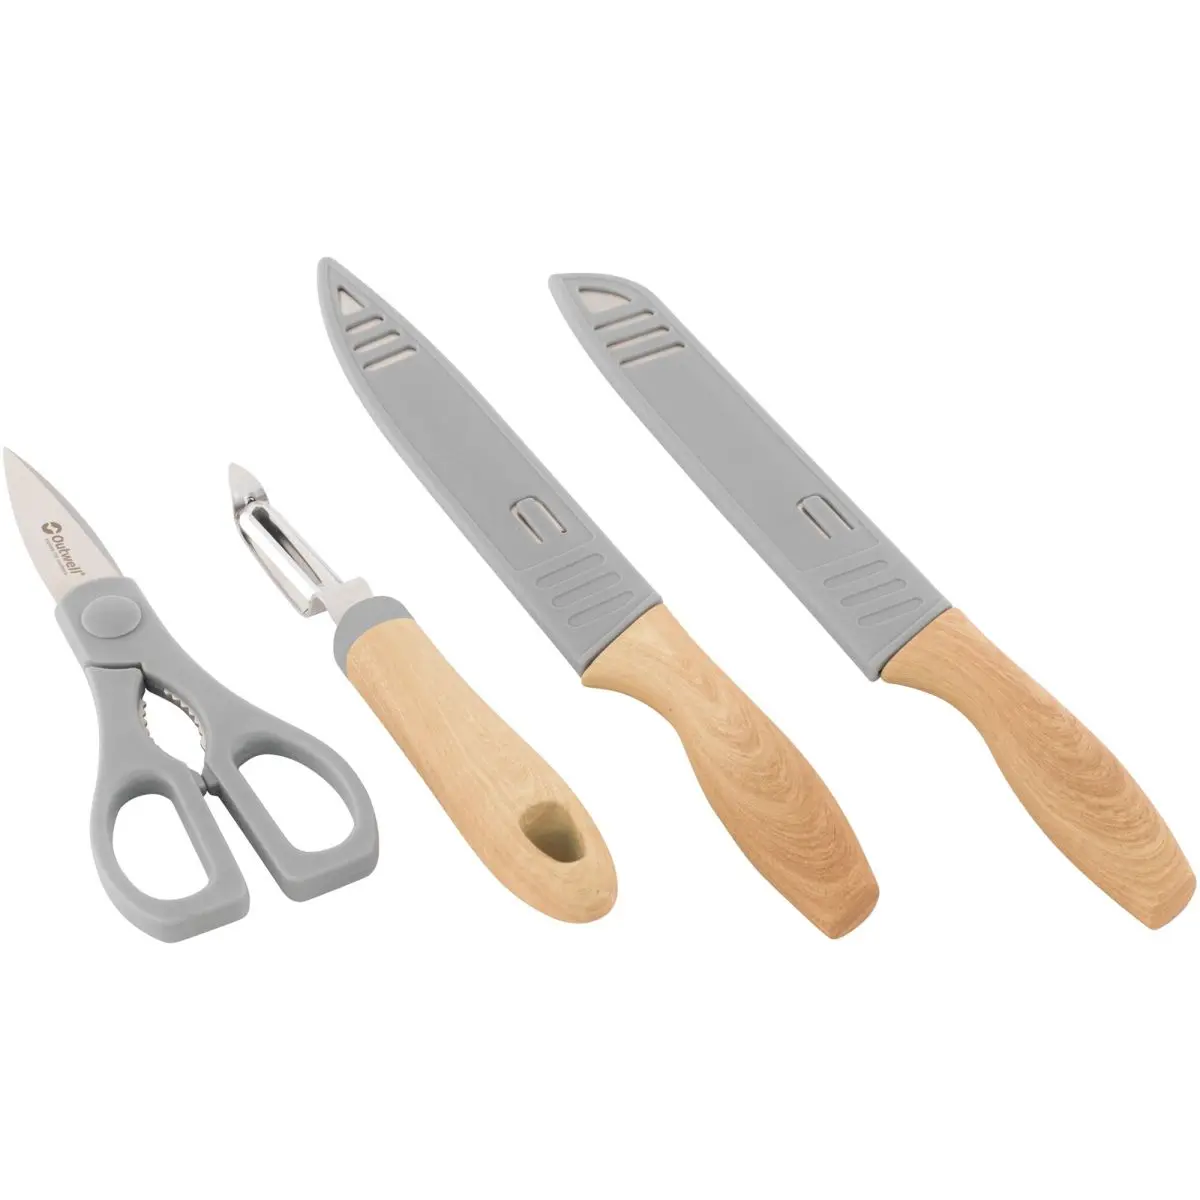 Chena Messer Set - Messerset mit Schere